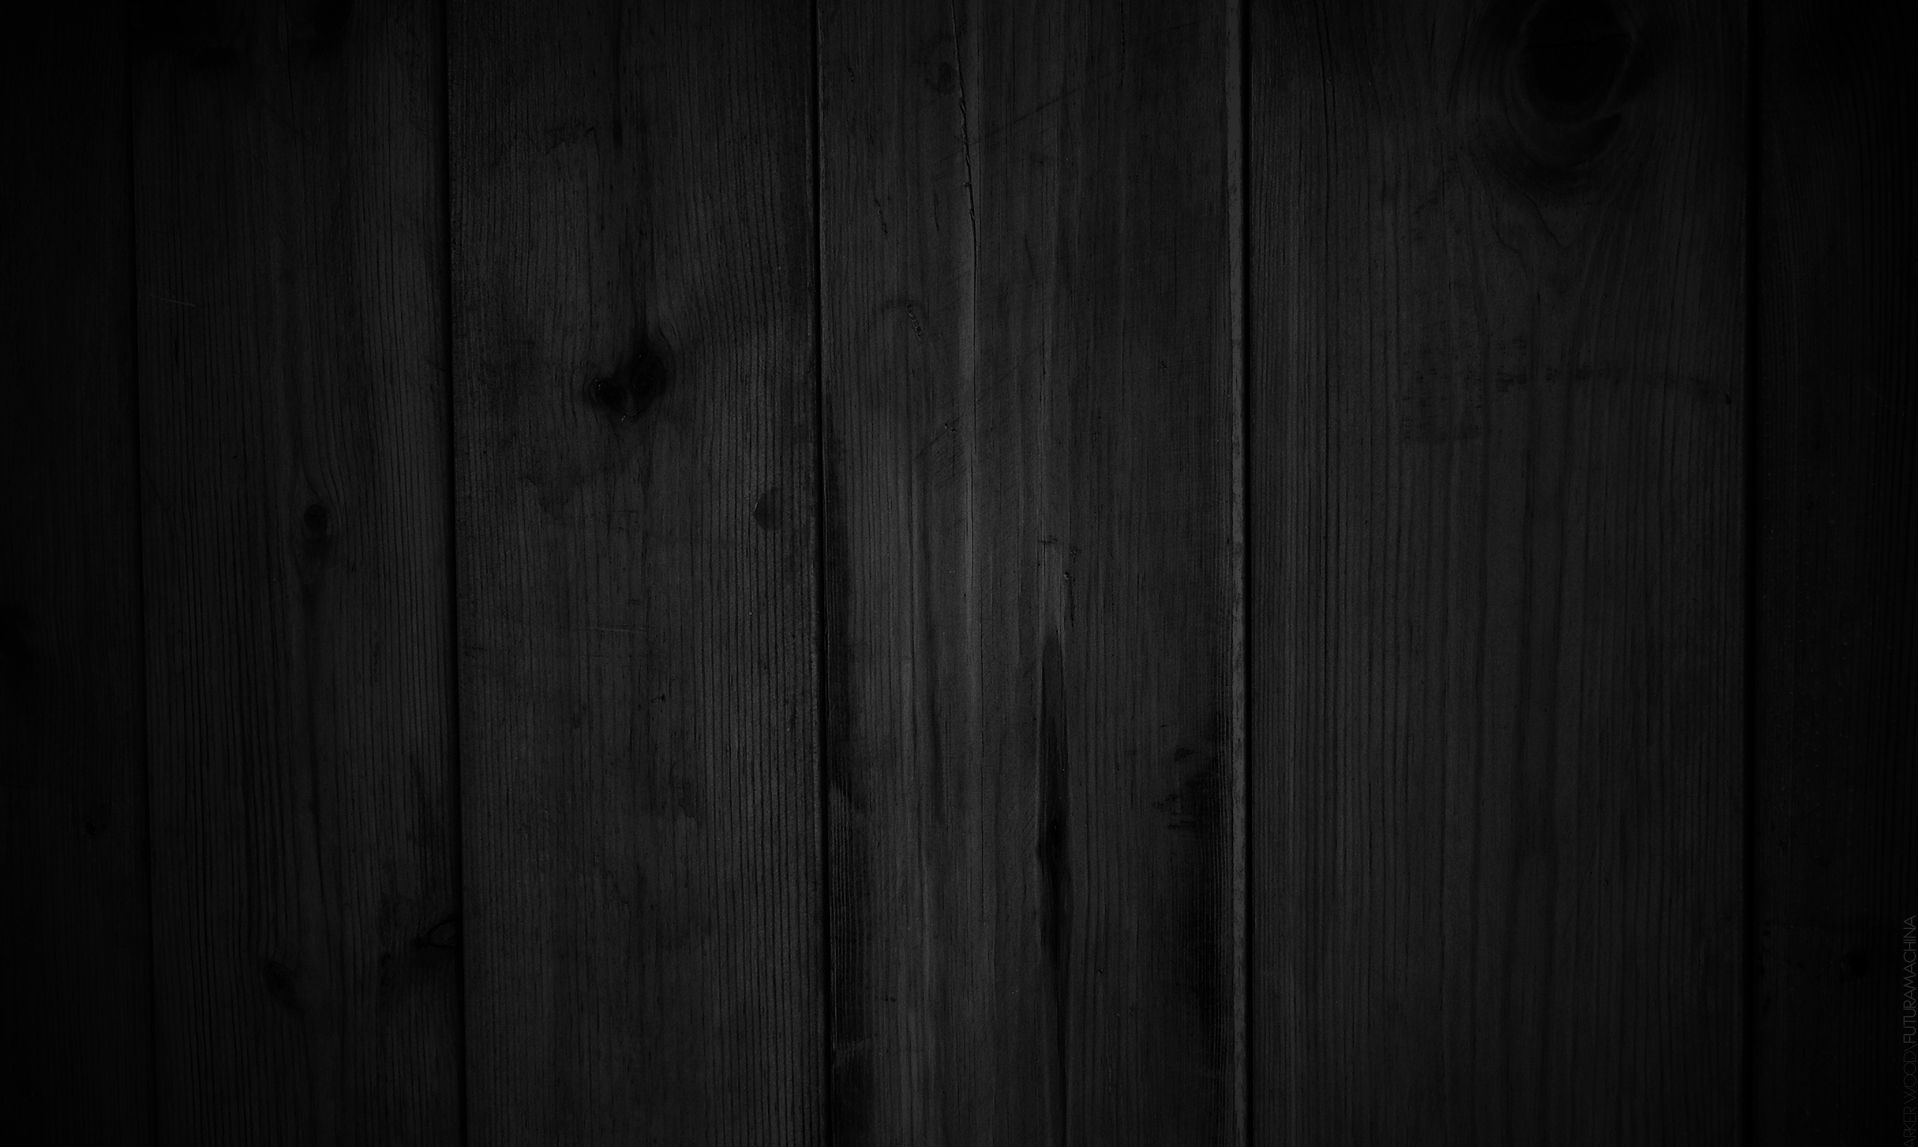 Dark wooden boards texture background, wood